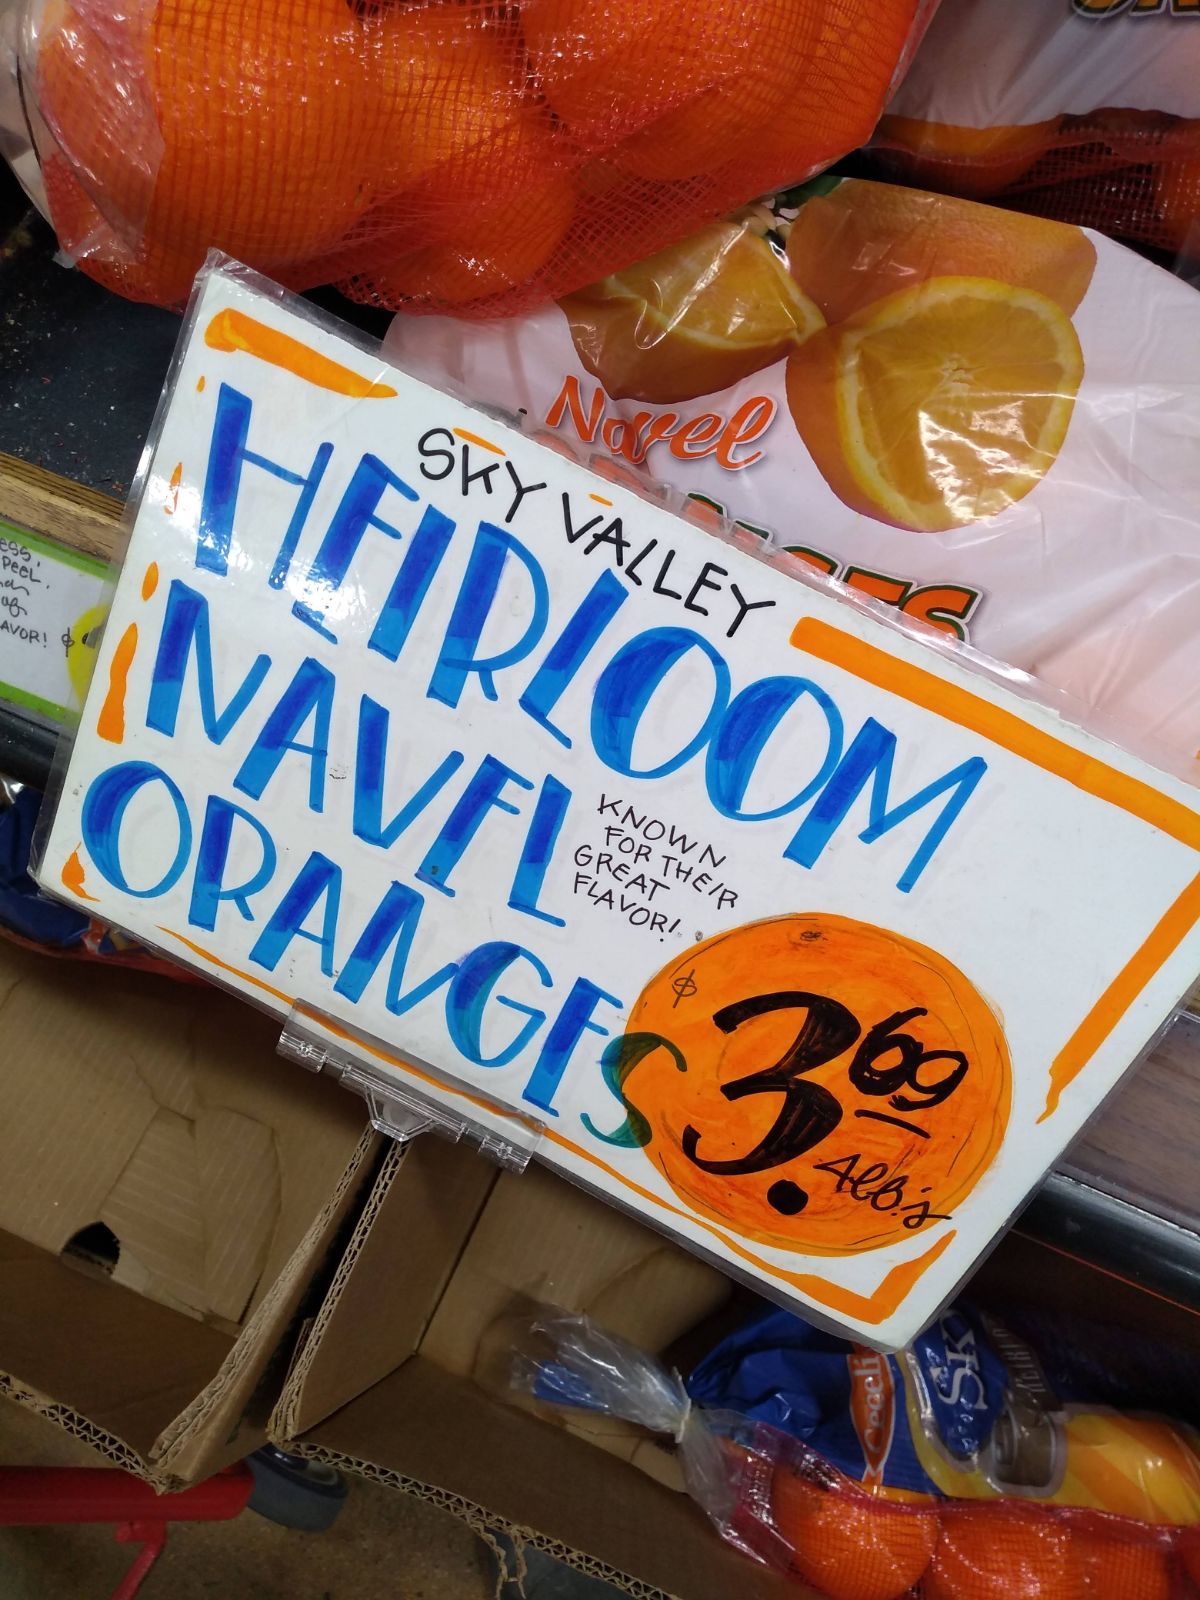 Bags of Sky Valley Heirloom navel oranges at Trader Joe's